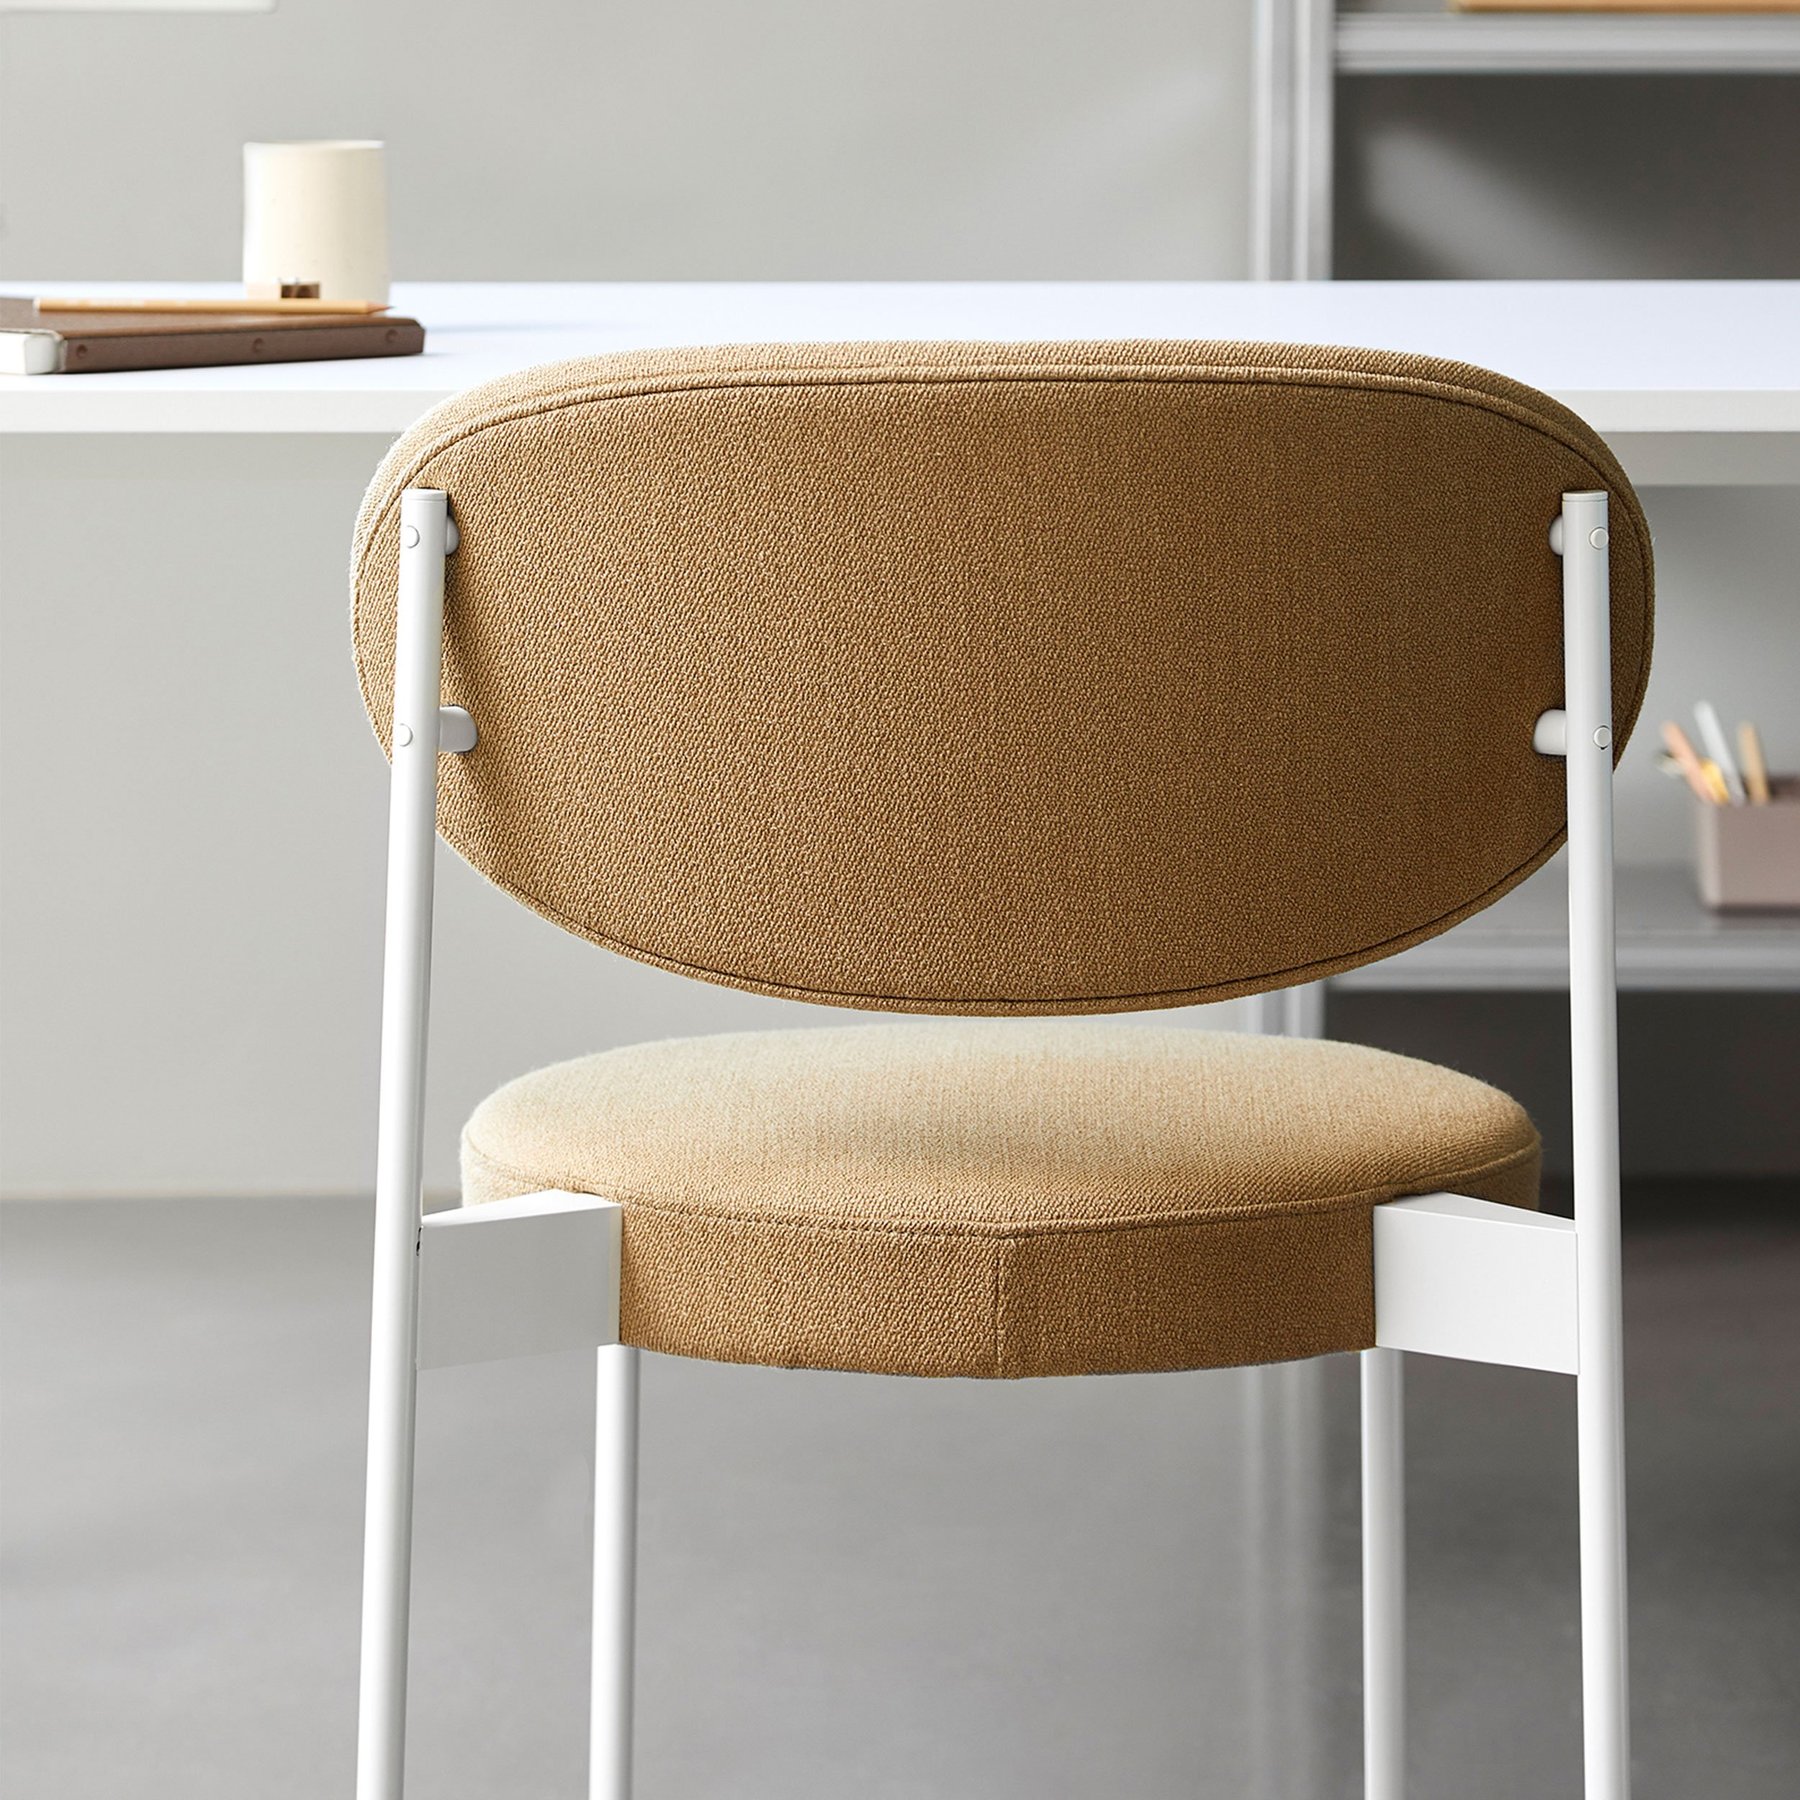 丹麦家具Verpan的SERIES 430 CHAIR WHITE FRAME 餐椅  细节图